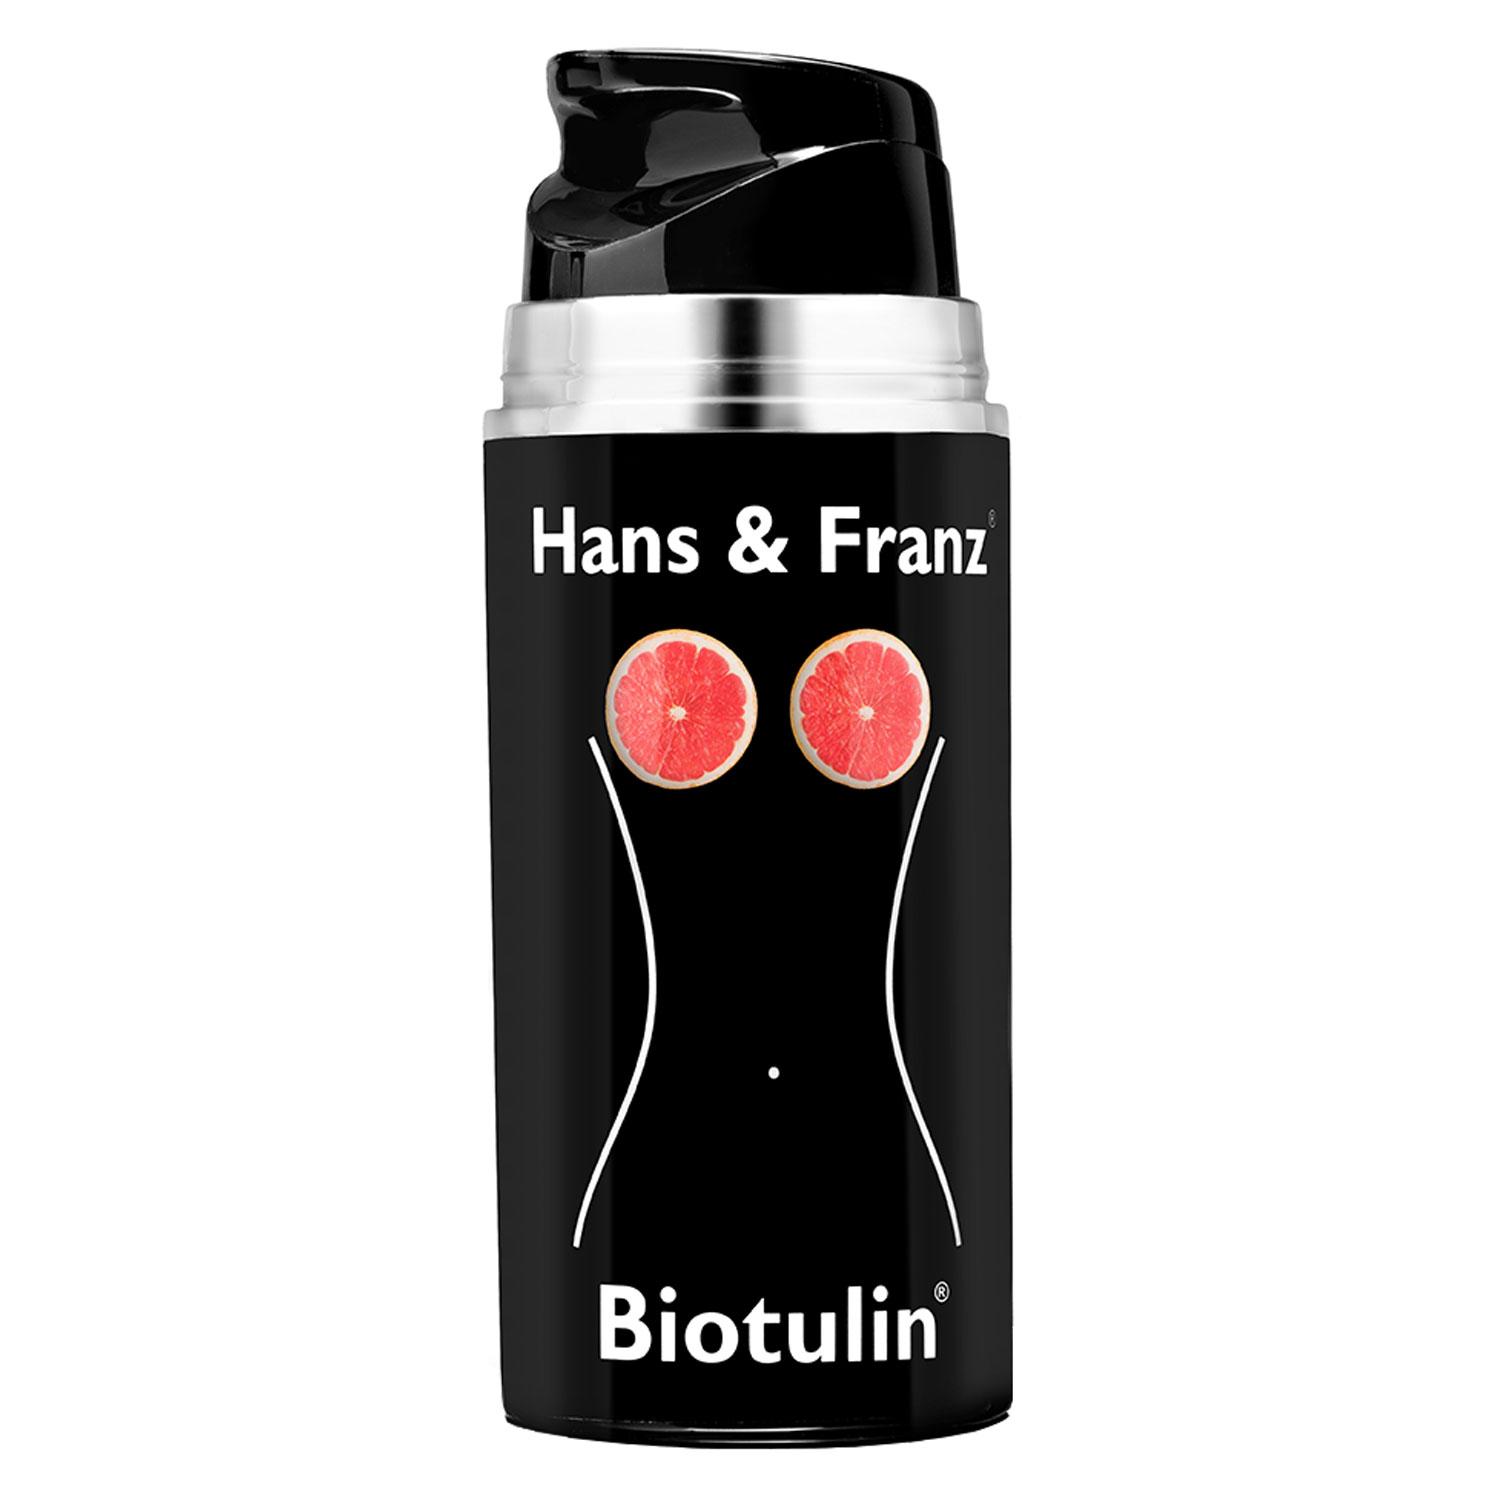 Biotulin - Hans & Franz